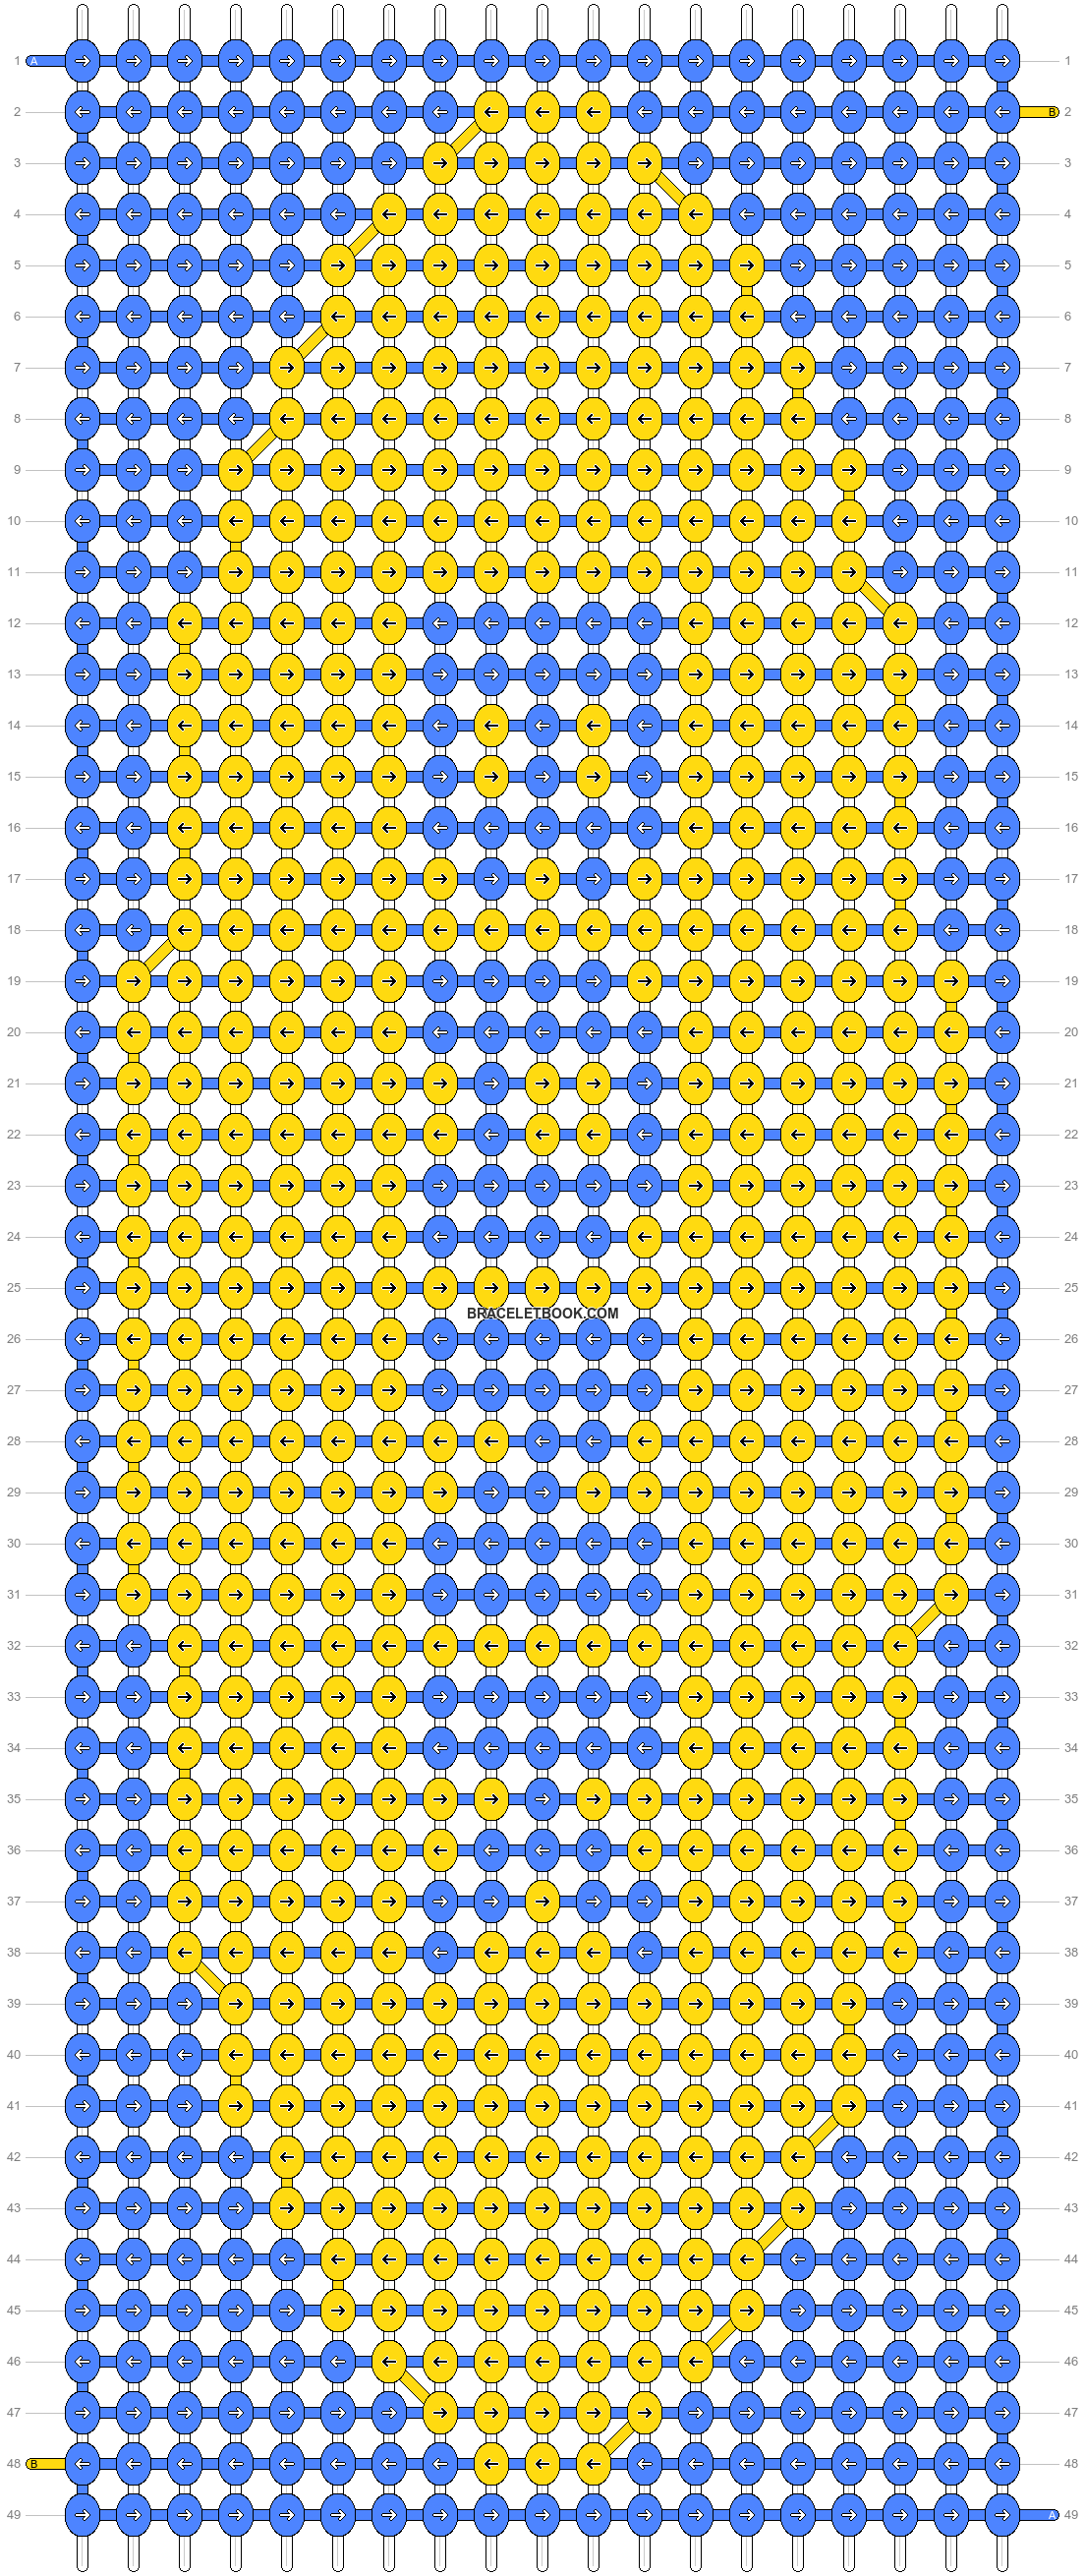 Alpha pattern #44214, BraceletBook